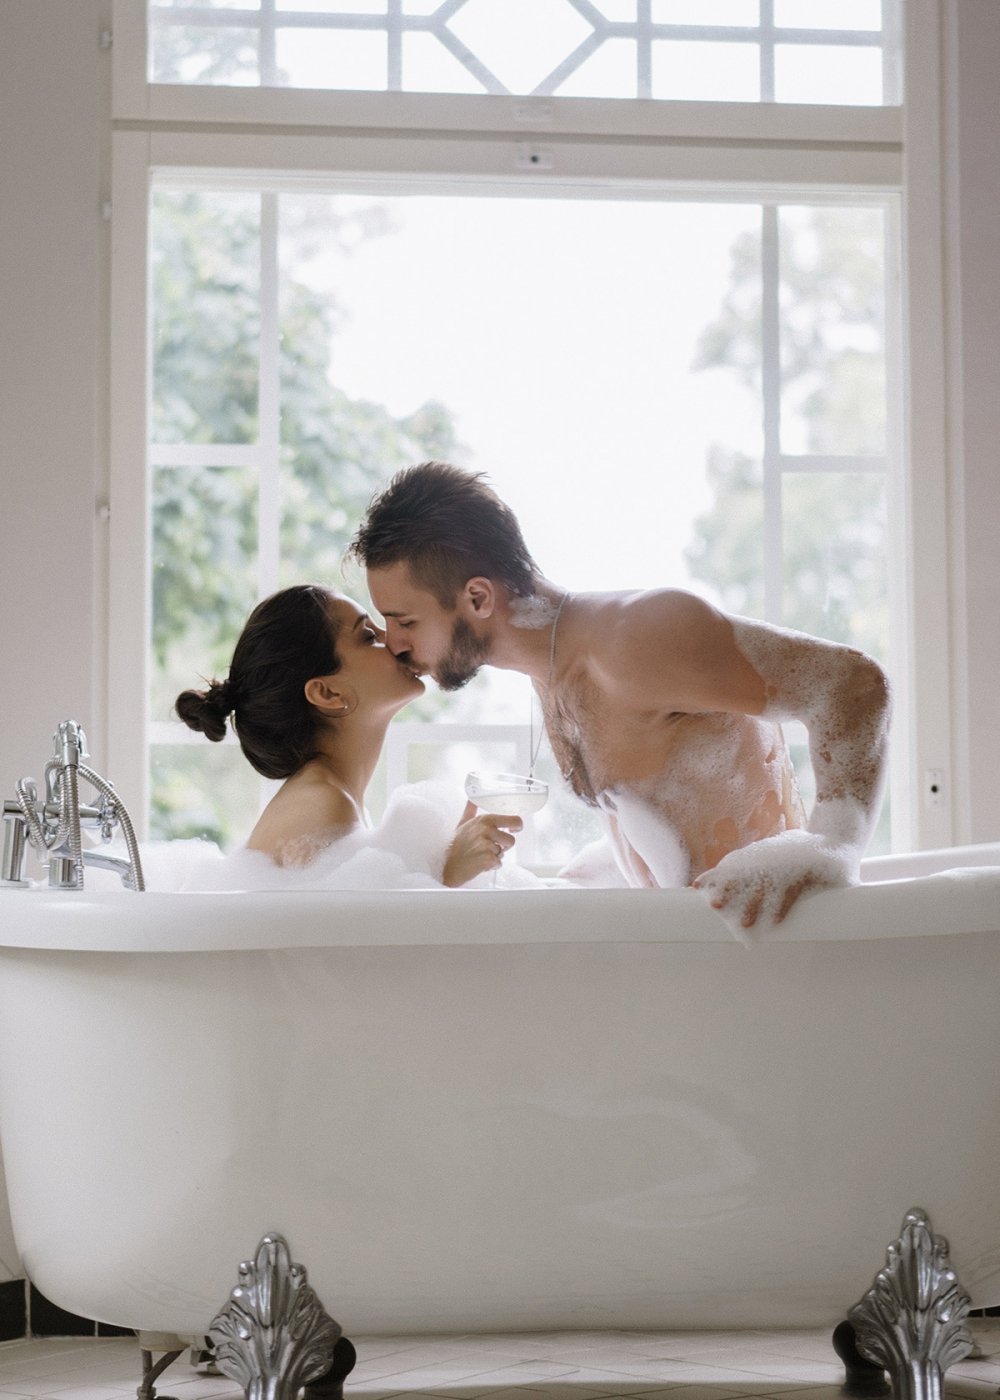 Фото парень с девушкой в ванне без лиц на аву